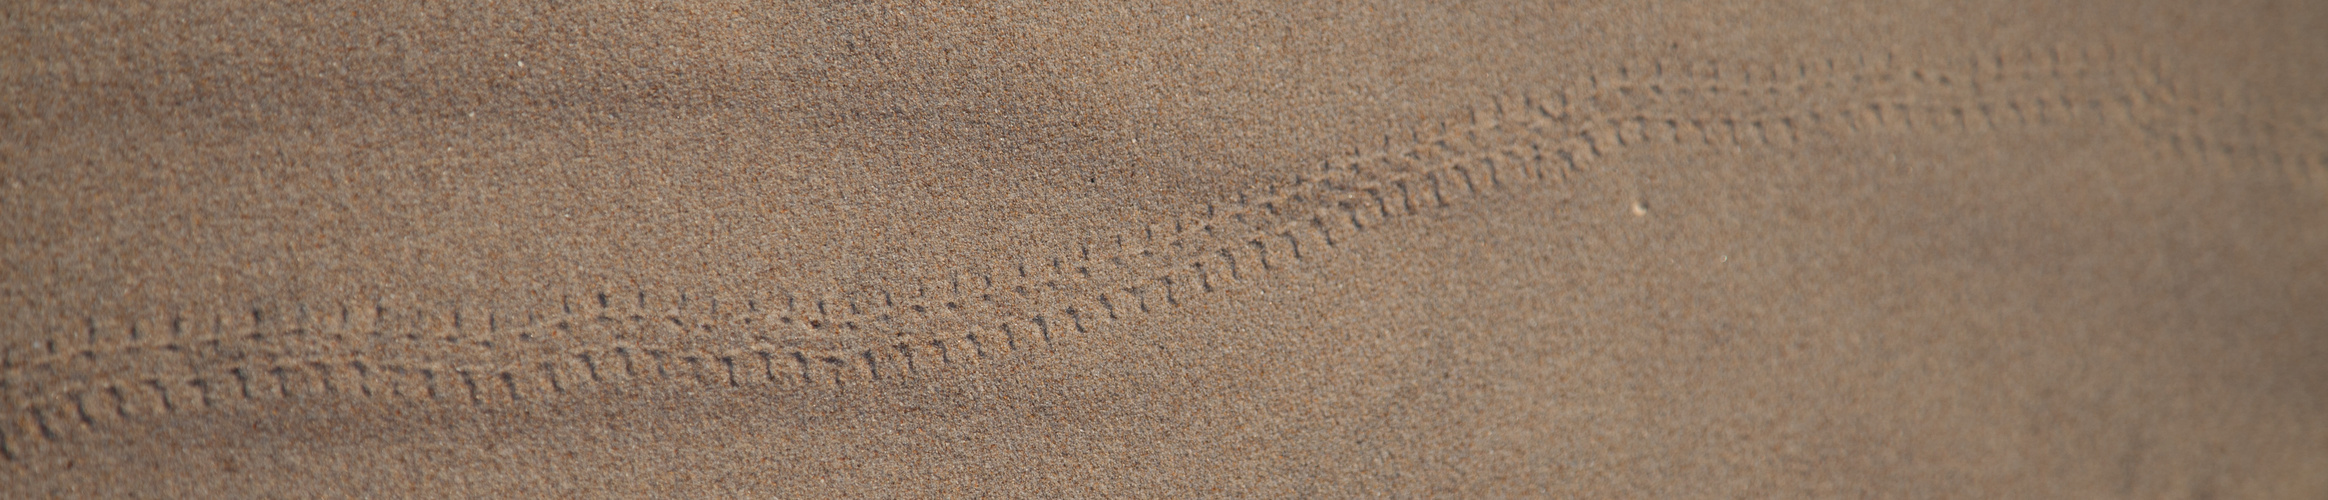 Deine Spuren im Sand